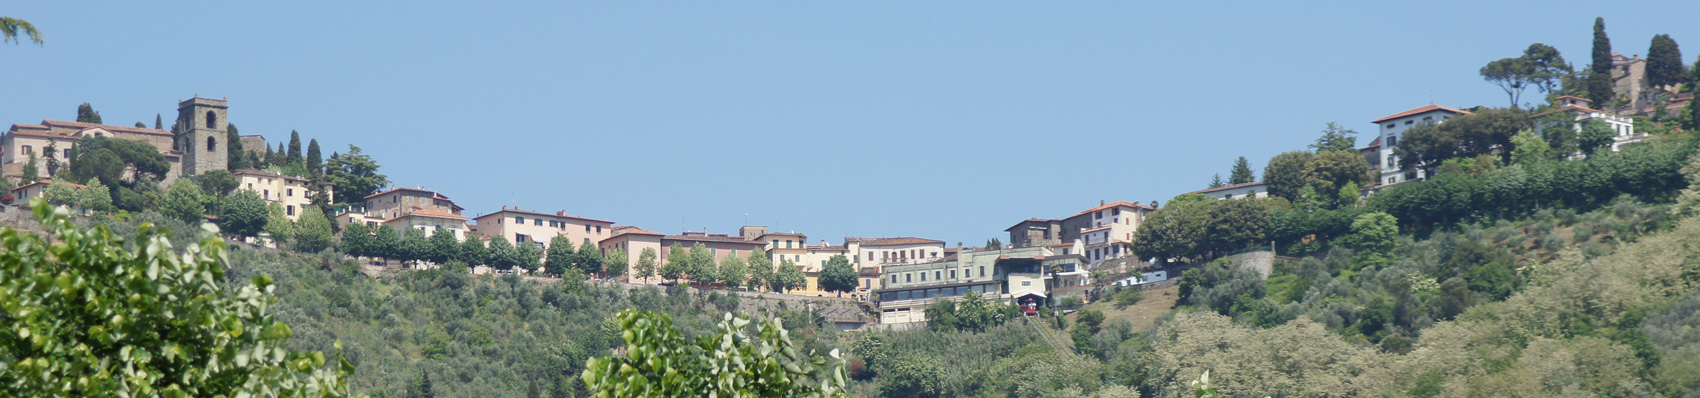 Hôtel Torretta Montecatini